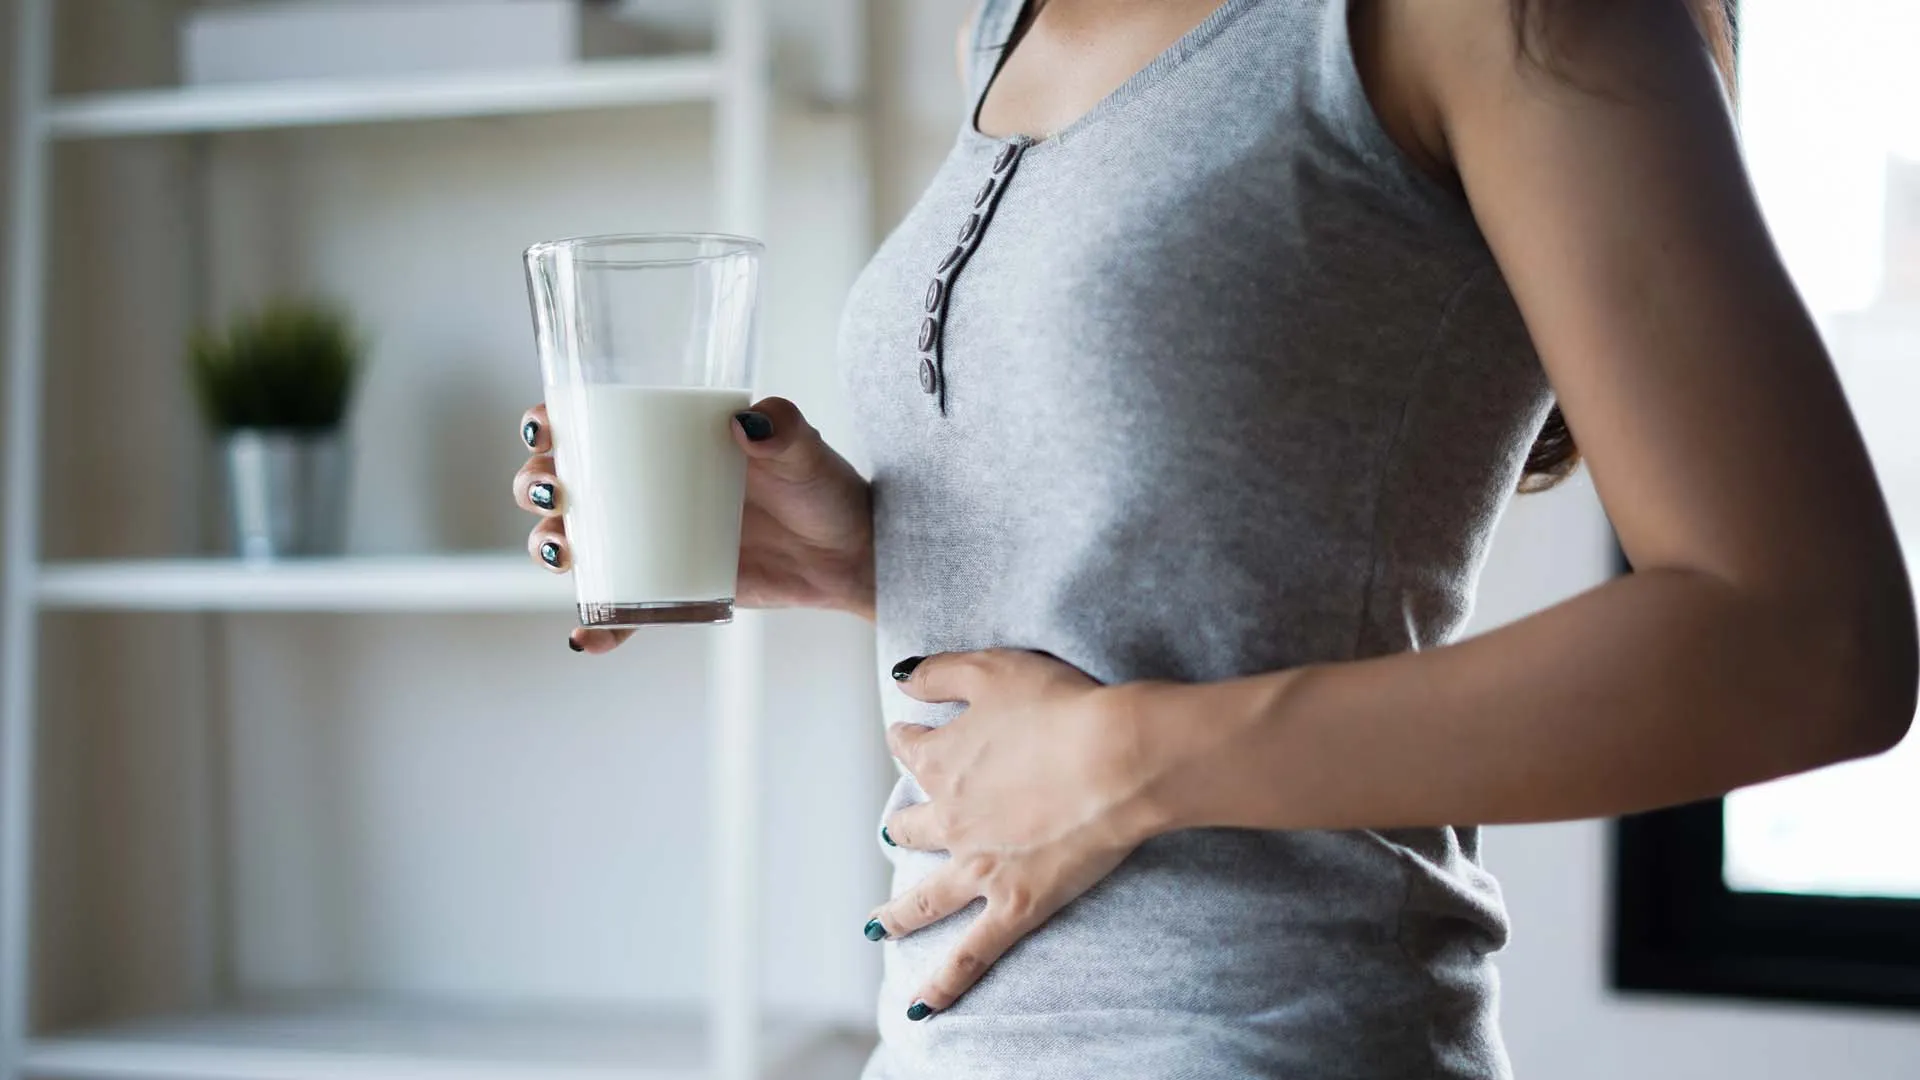 İnsanlarda çok sık görülen bir bağırsak sindirim sorunudur. Sadece hayvansal süt ürünlerinde bulunan laktoz maddesinin sindiremediği durumlara laktoz intoleransı denir.